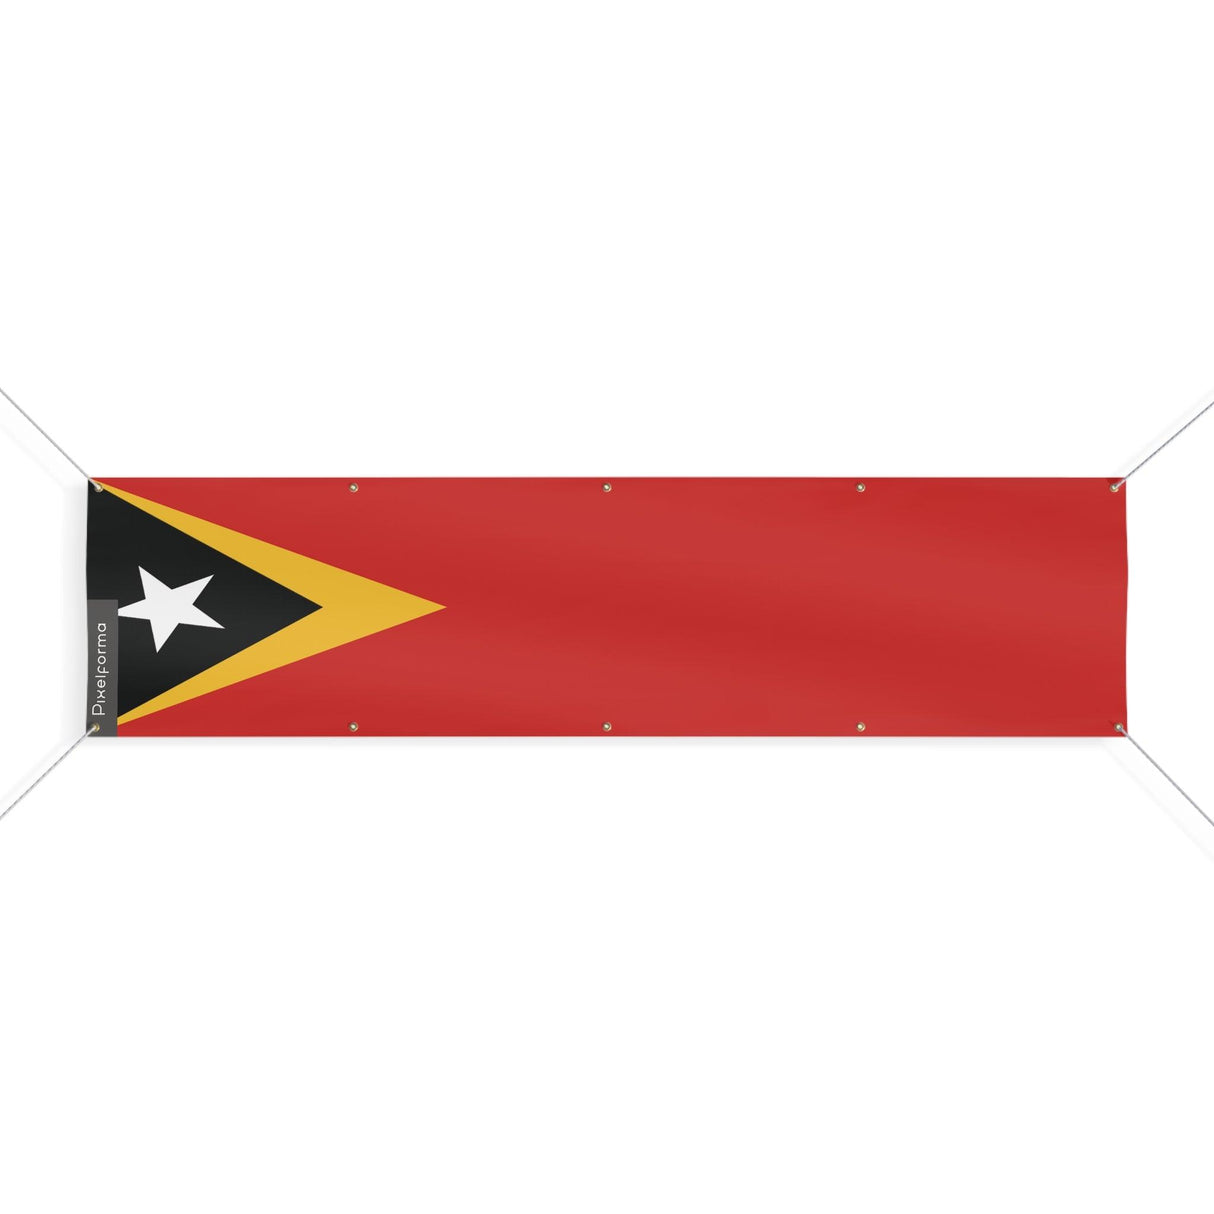 Drapeau du Timor oriental 10 Oeillets en plusieurs tailles - Pixelforma 